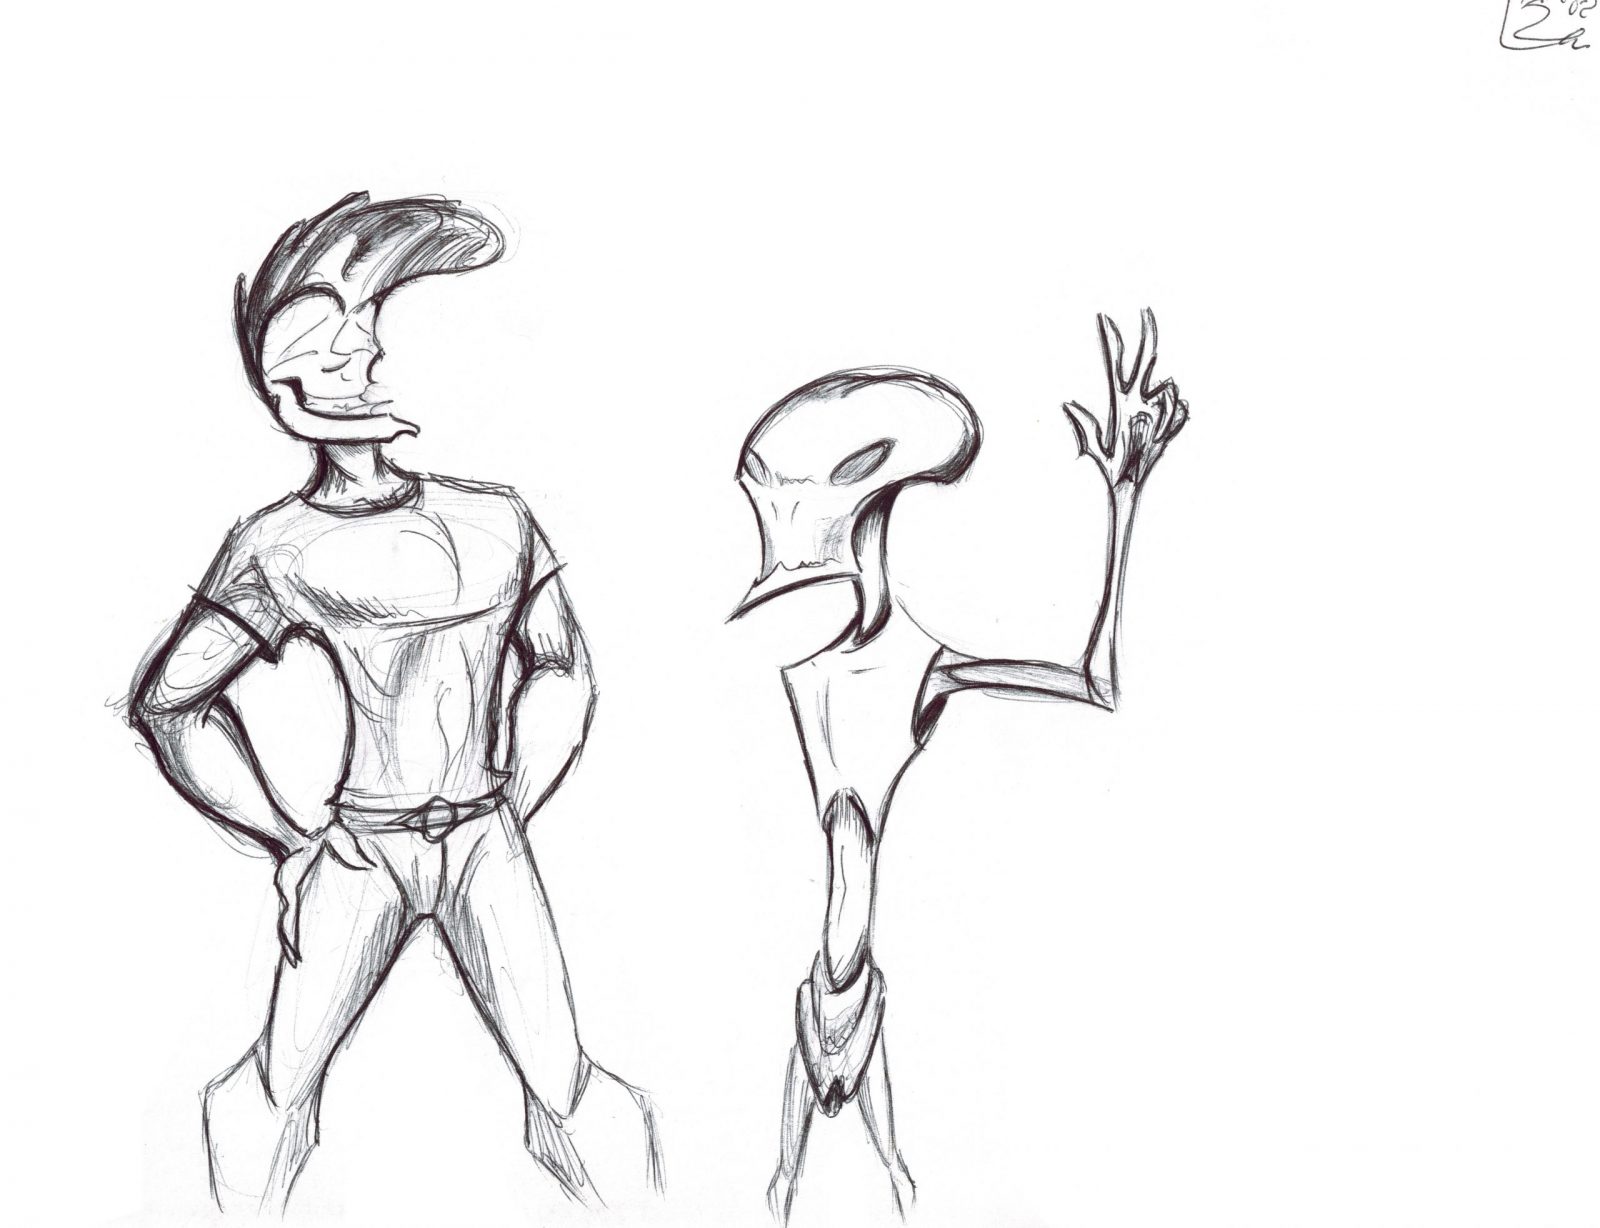 50’s Guy and Alien dude doodles